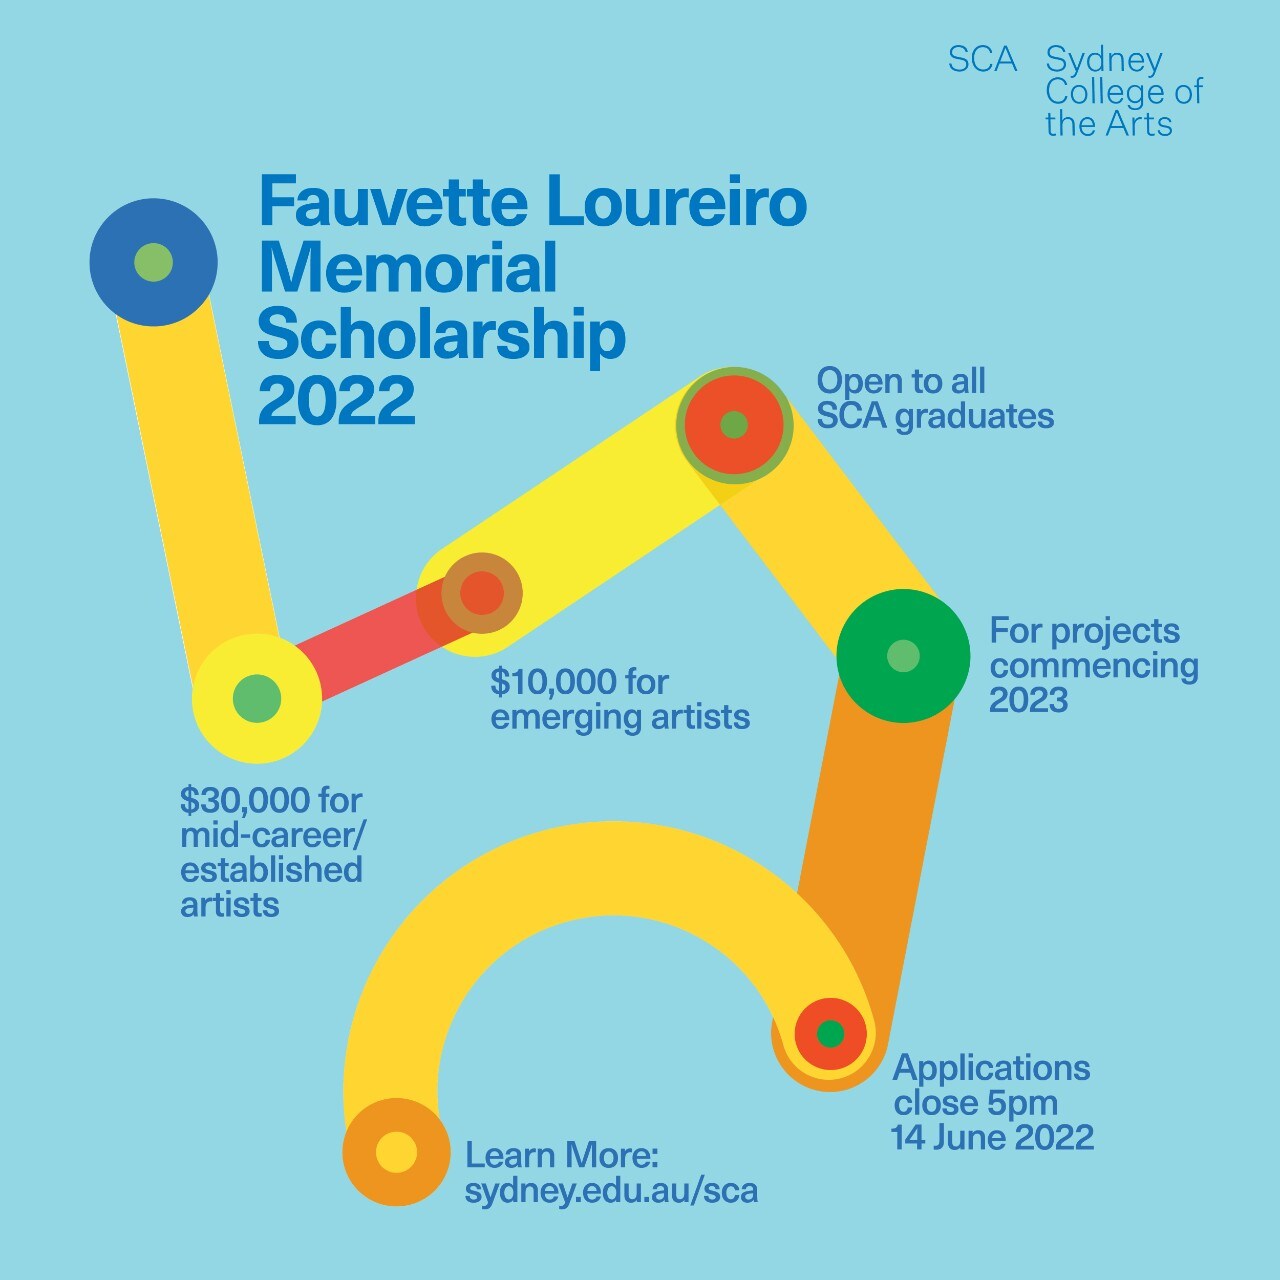 Fauvette Loureiro Memorial Scholarship Gallery Installation